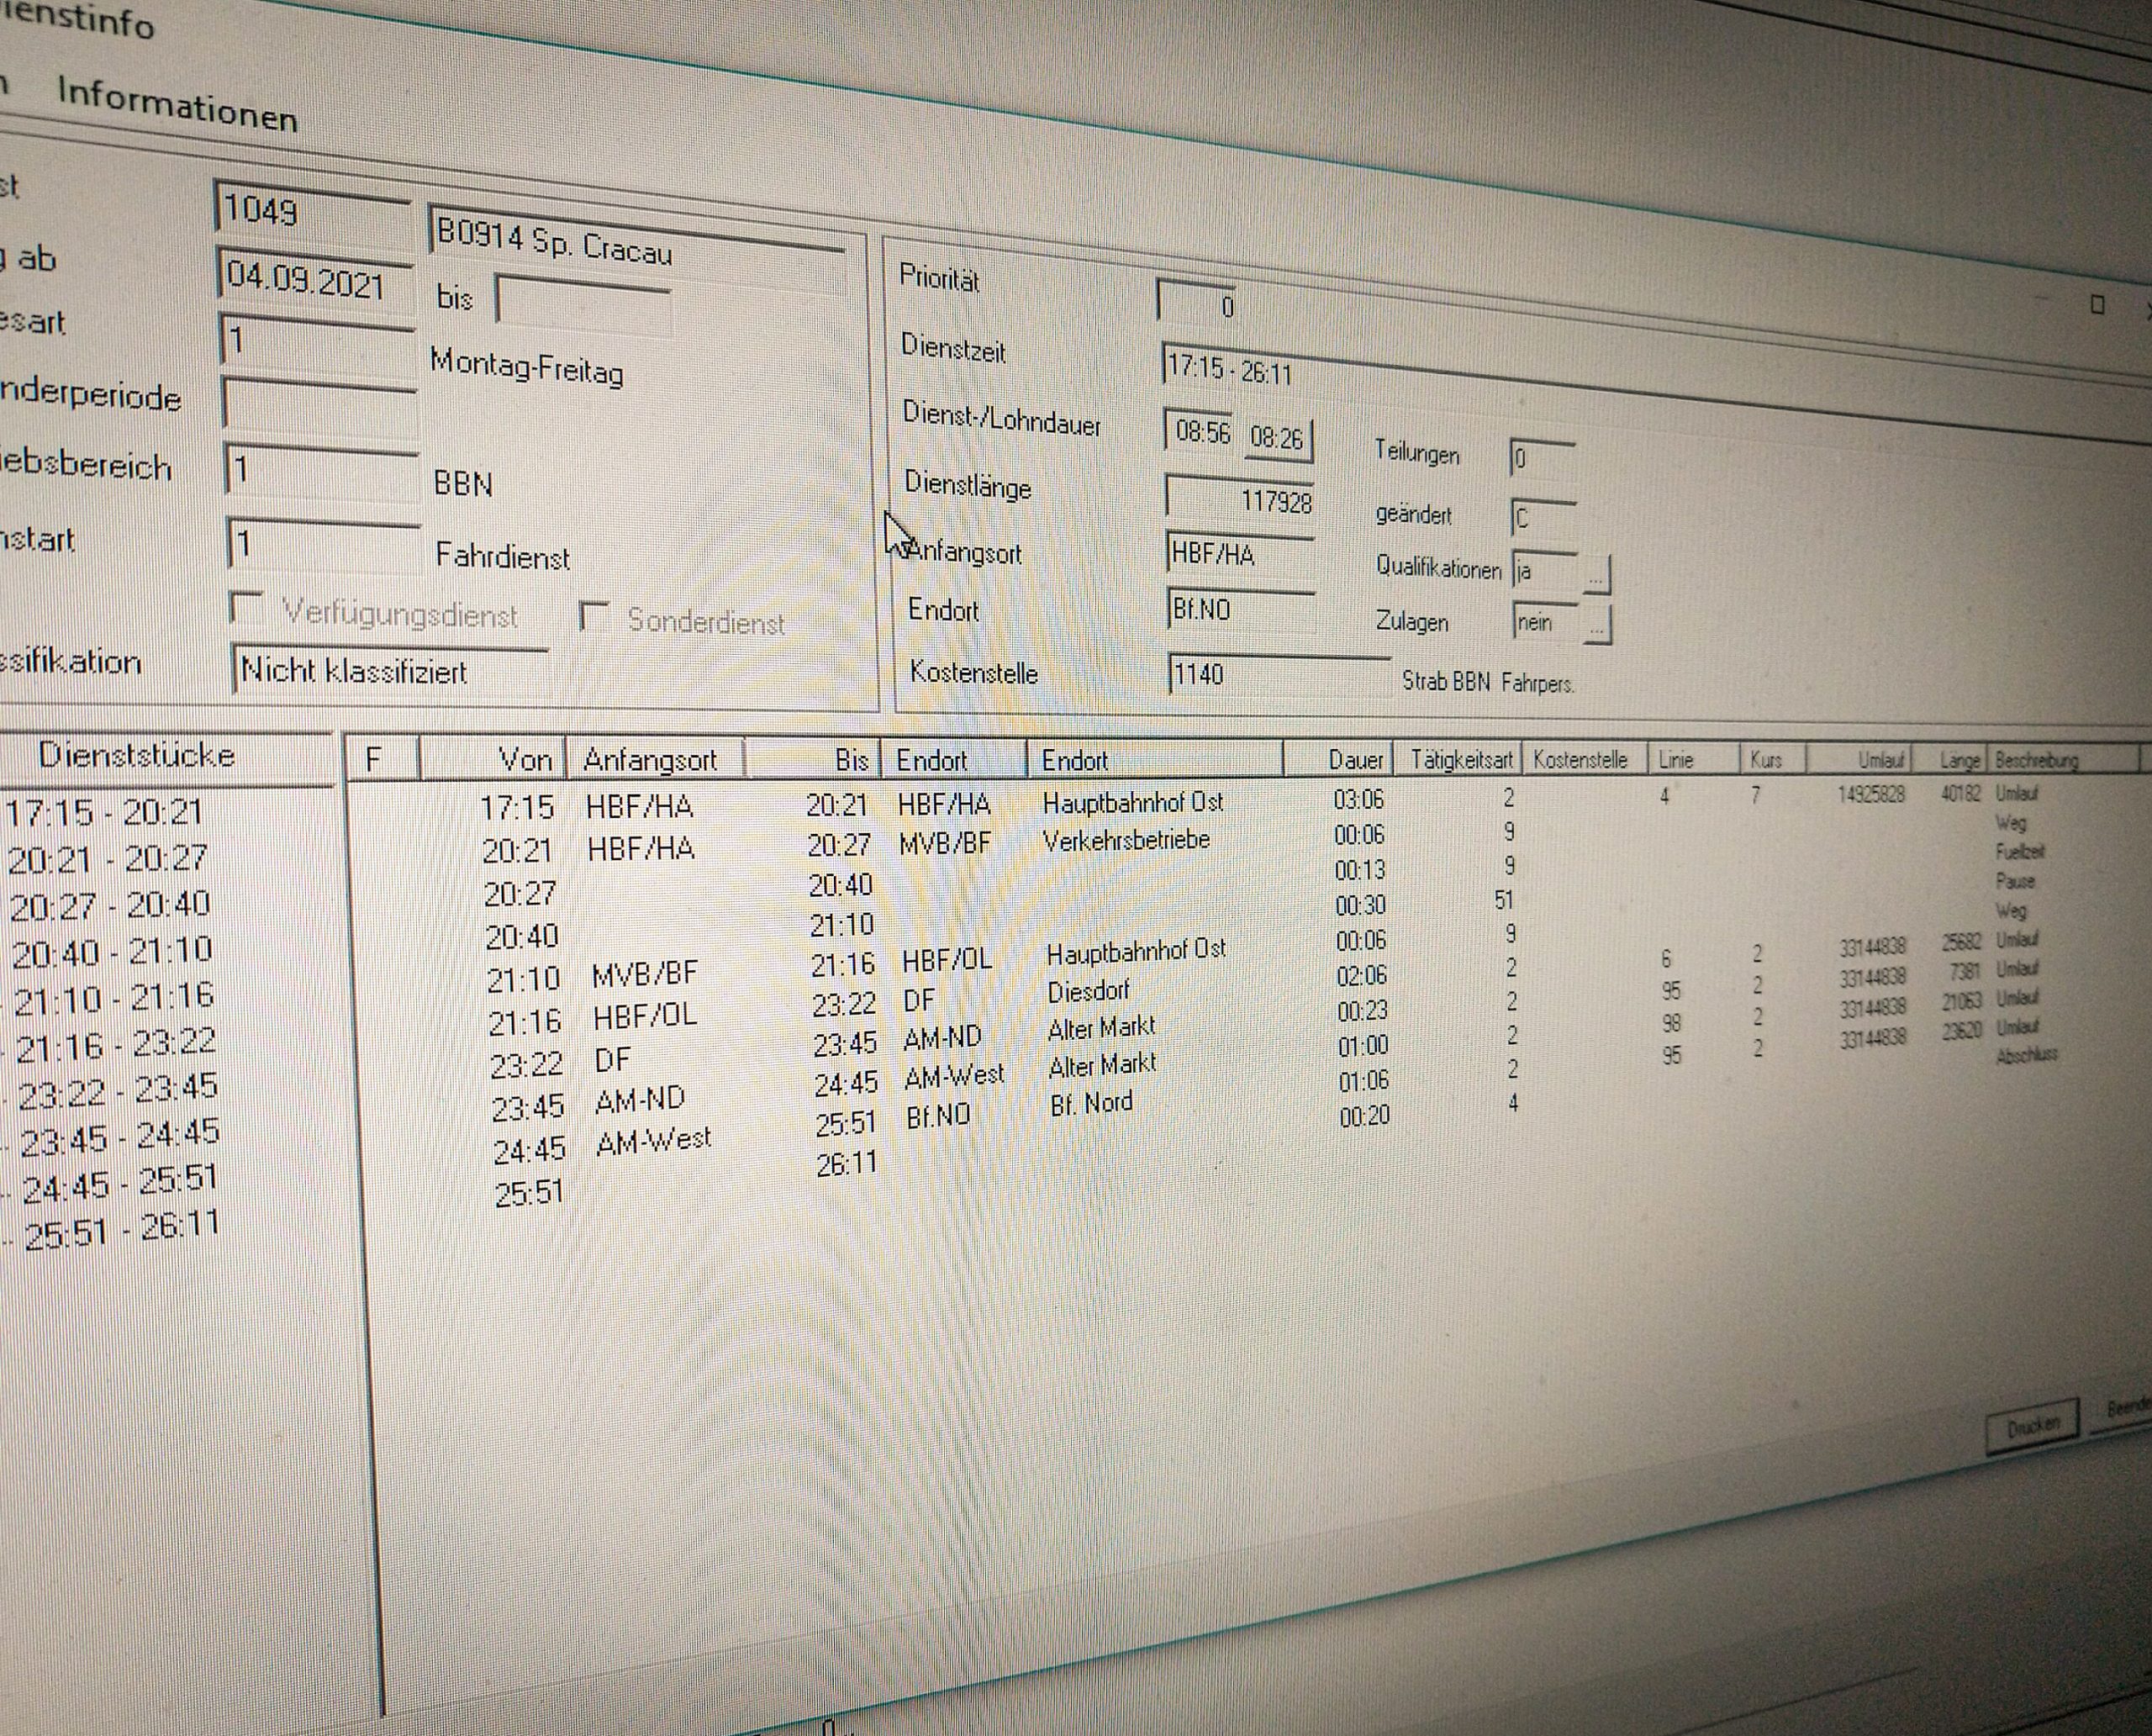 Detailansicht eines Fahrdienstes auf einem PC-Monitor